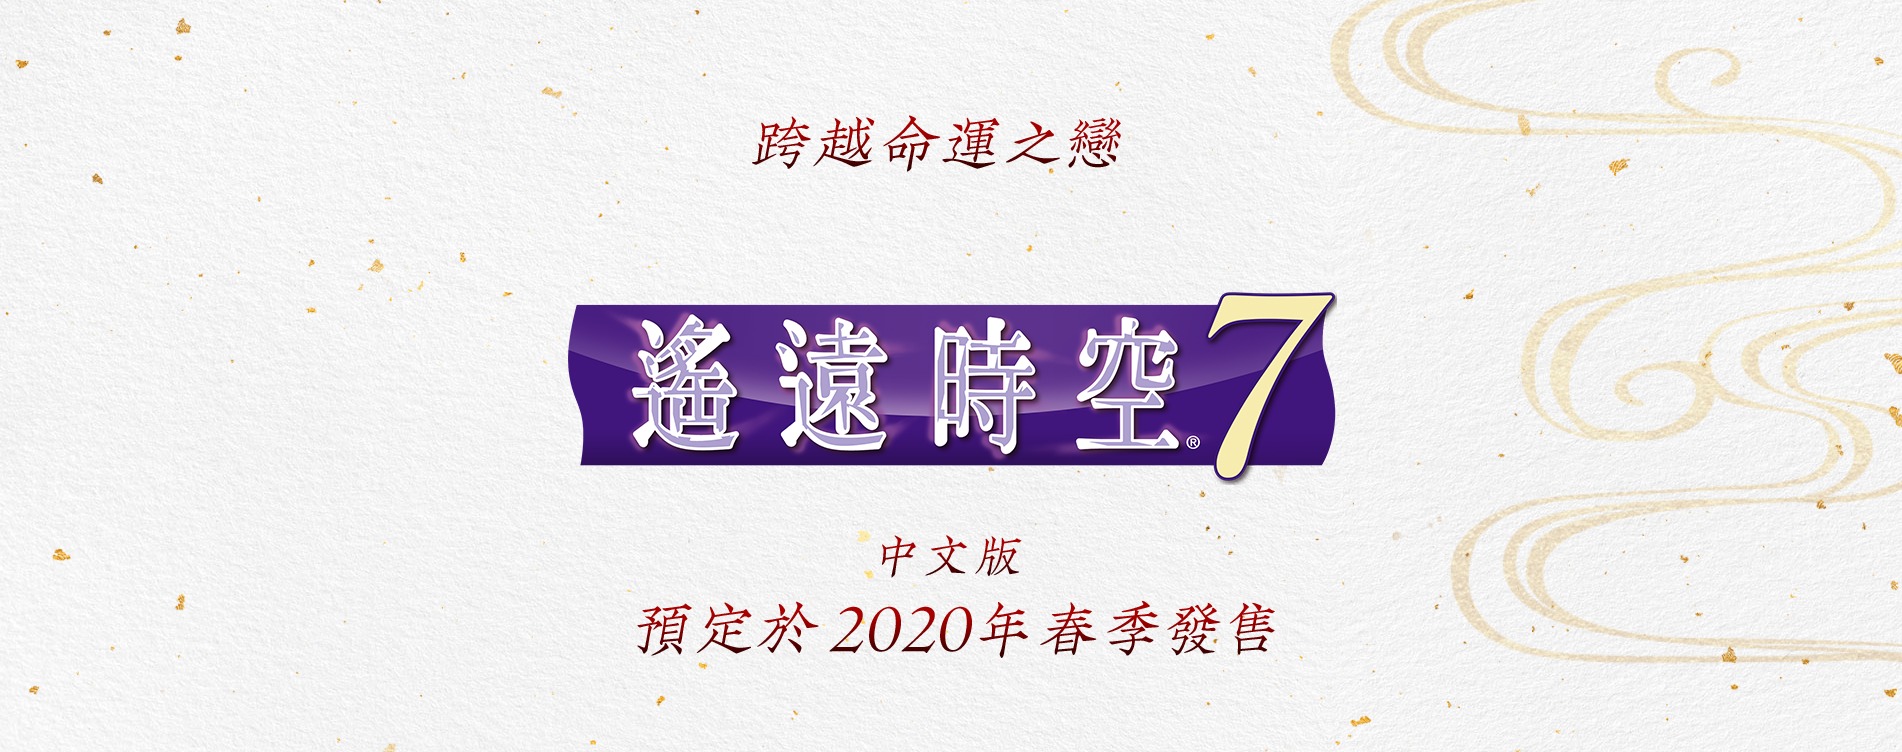 《遥近时空7》中文平易近网更新 大年夜量人设及CG图明相